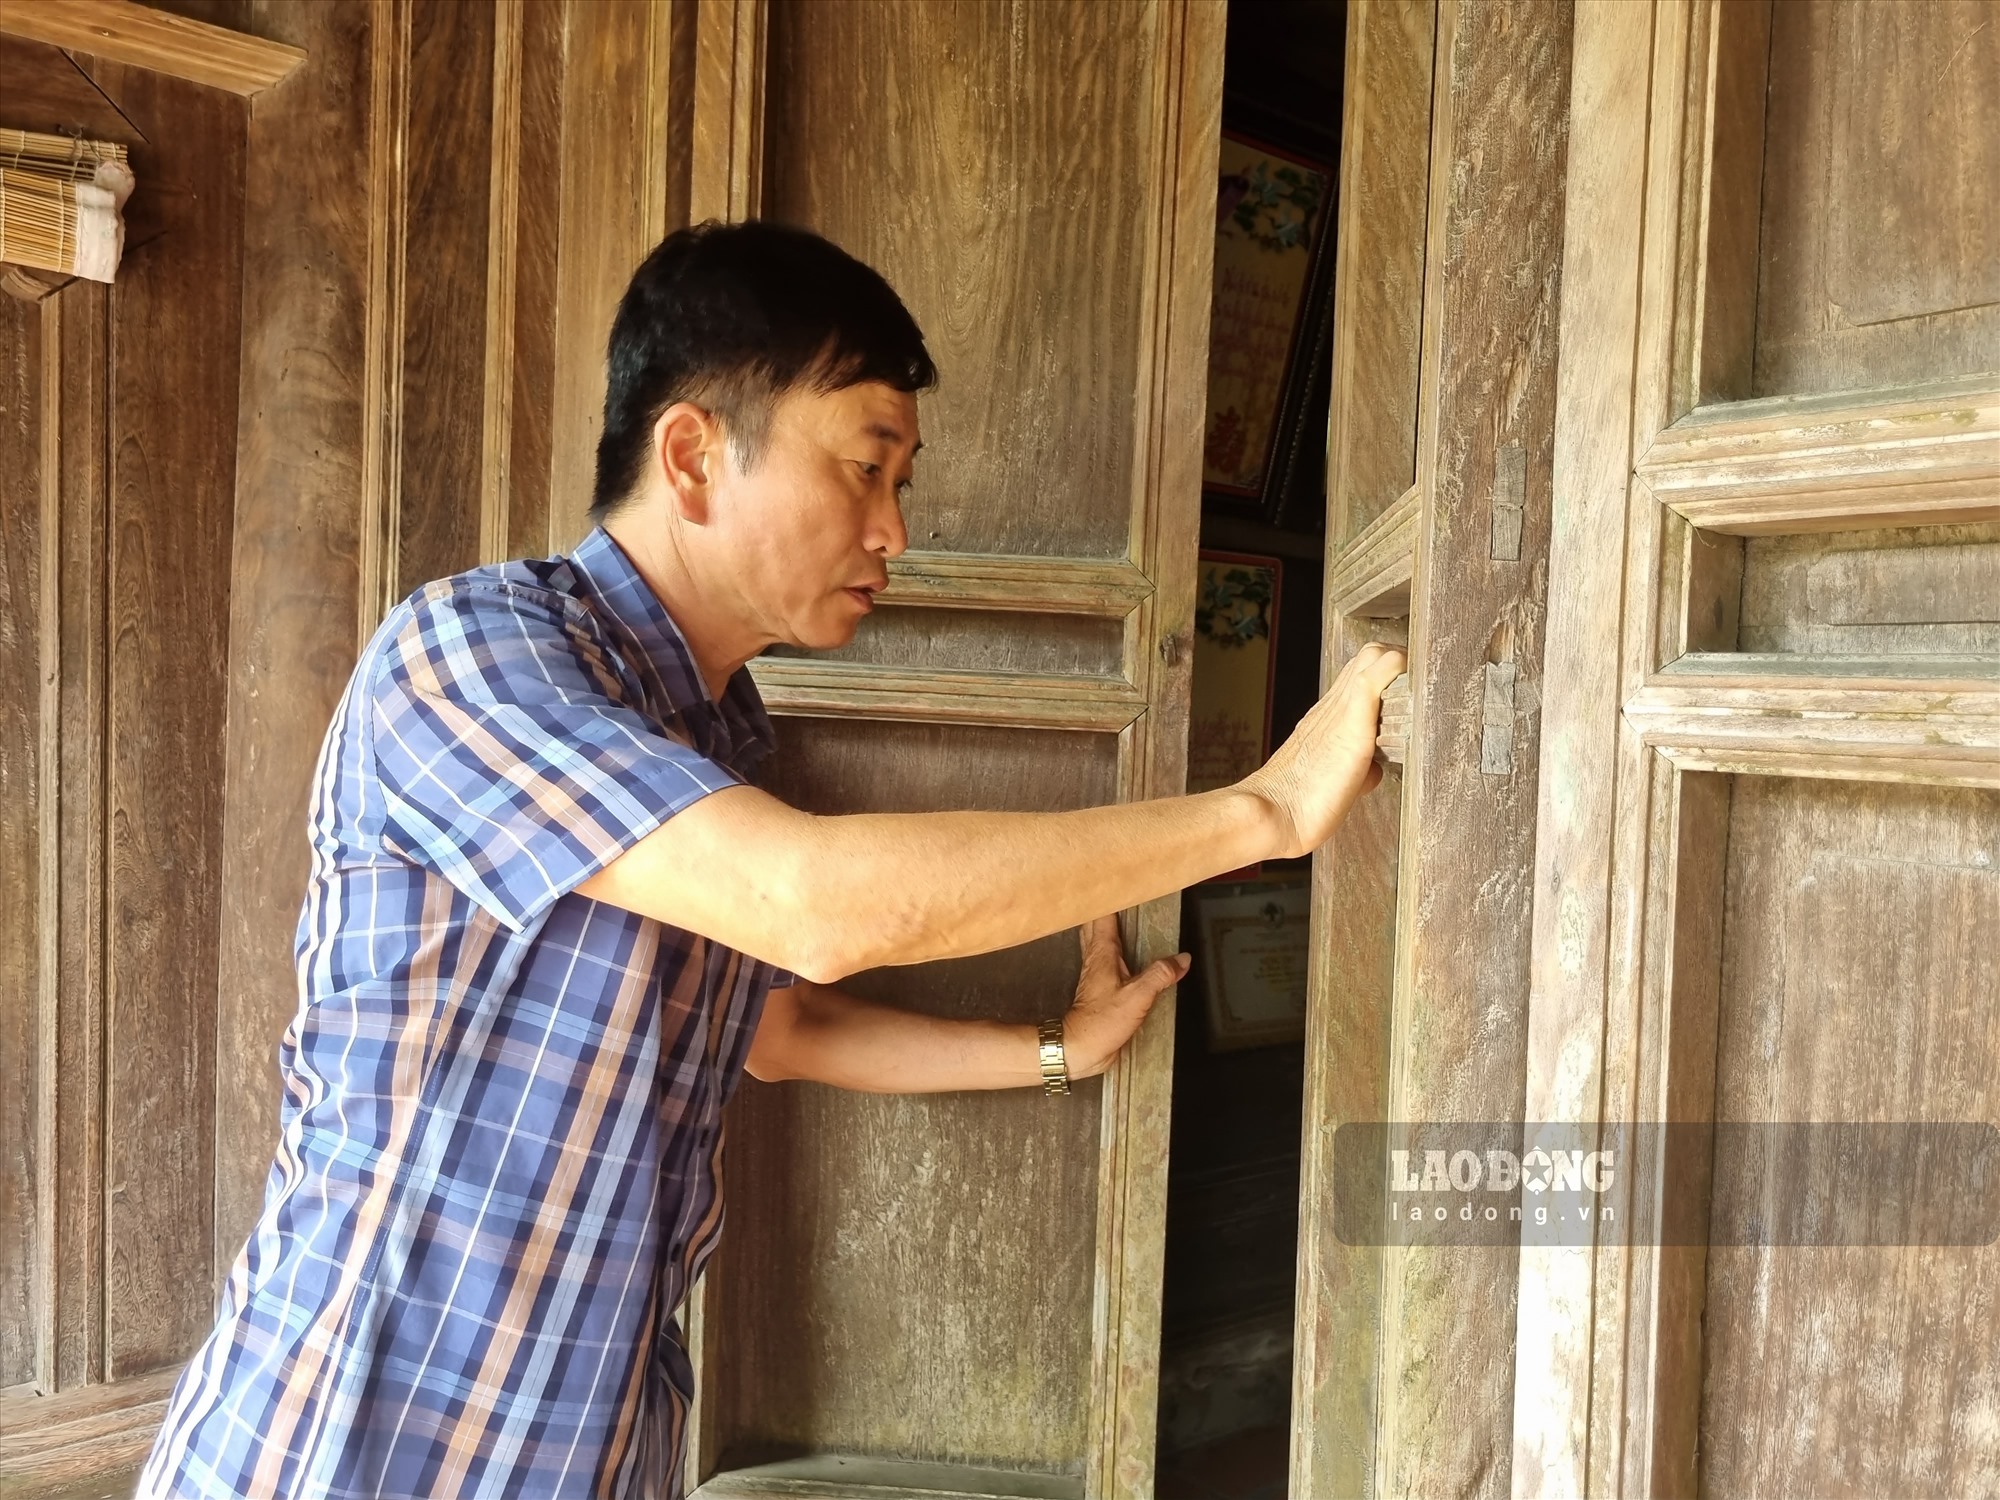 Chiêm ngưỡng ngôi nhà cổ hơn 150 tuổi giữ nguyên kiến trúc ở Thái Bình